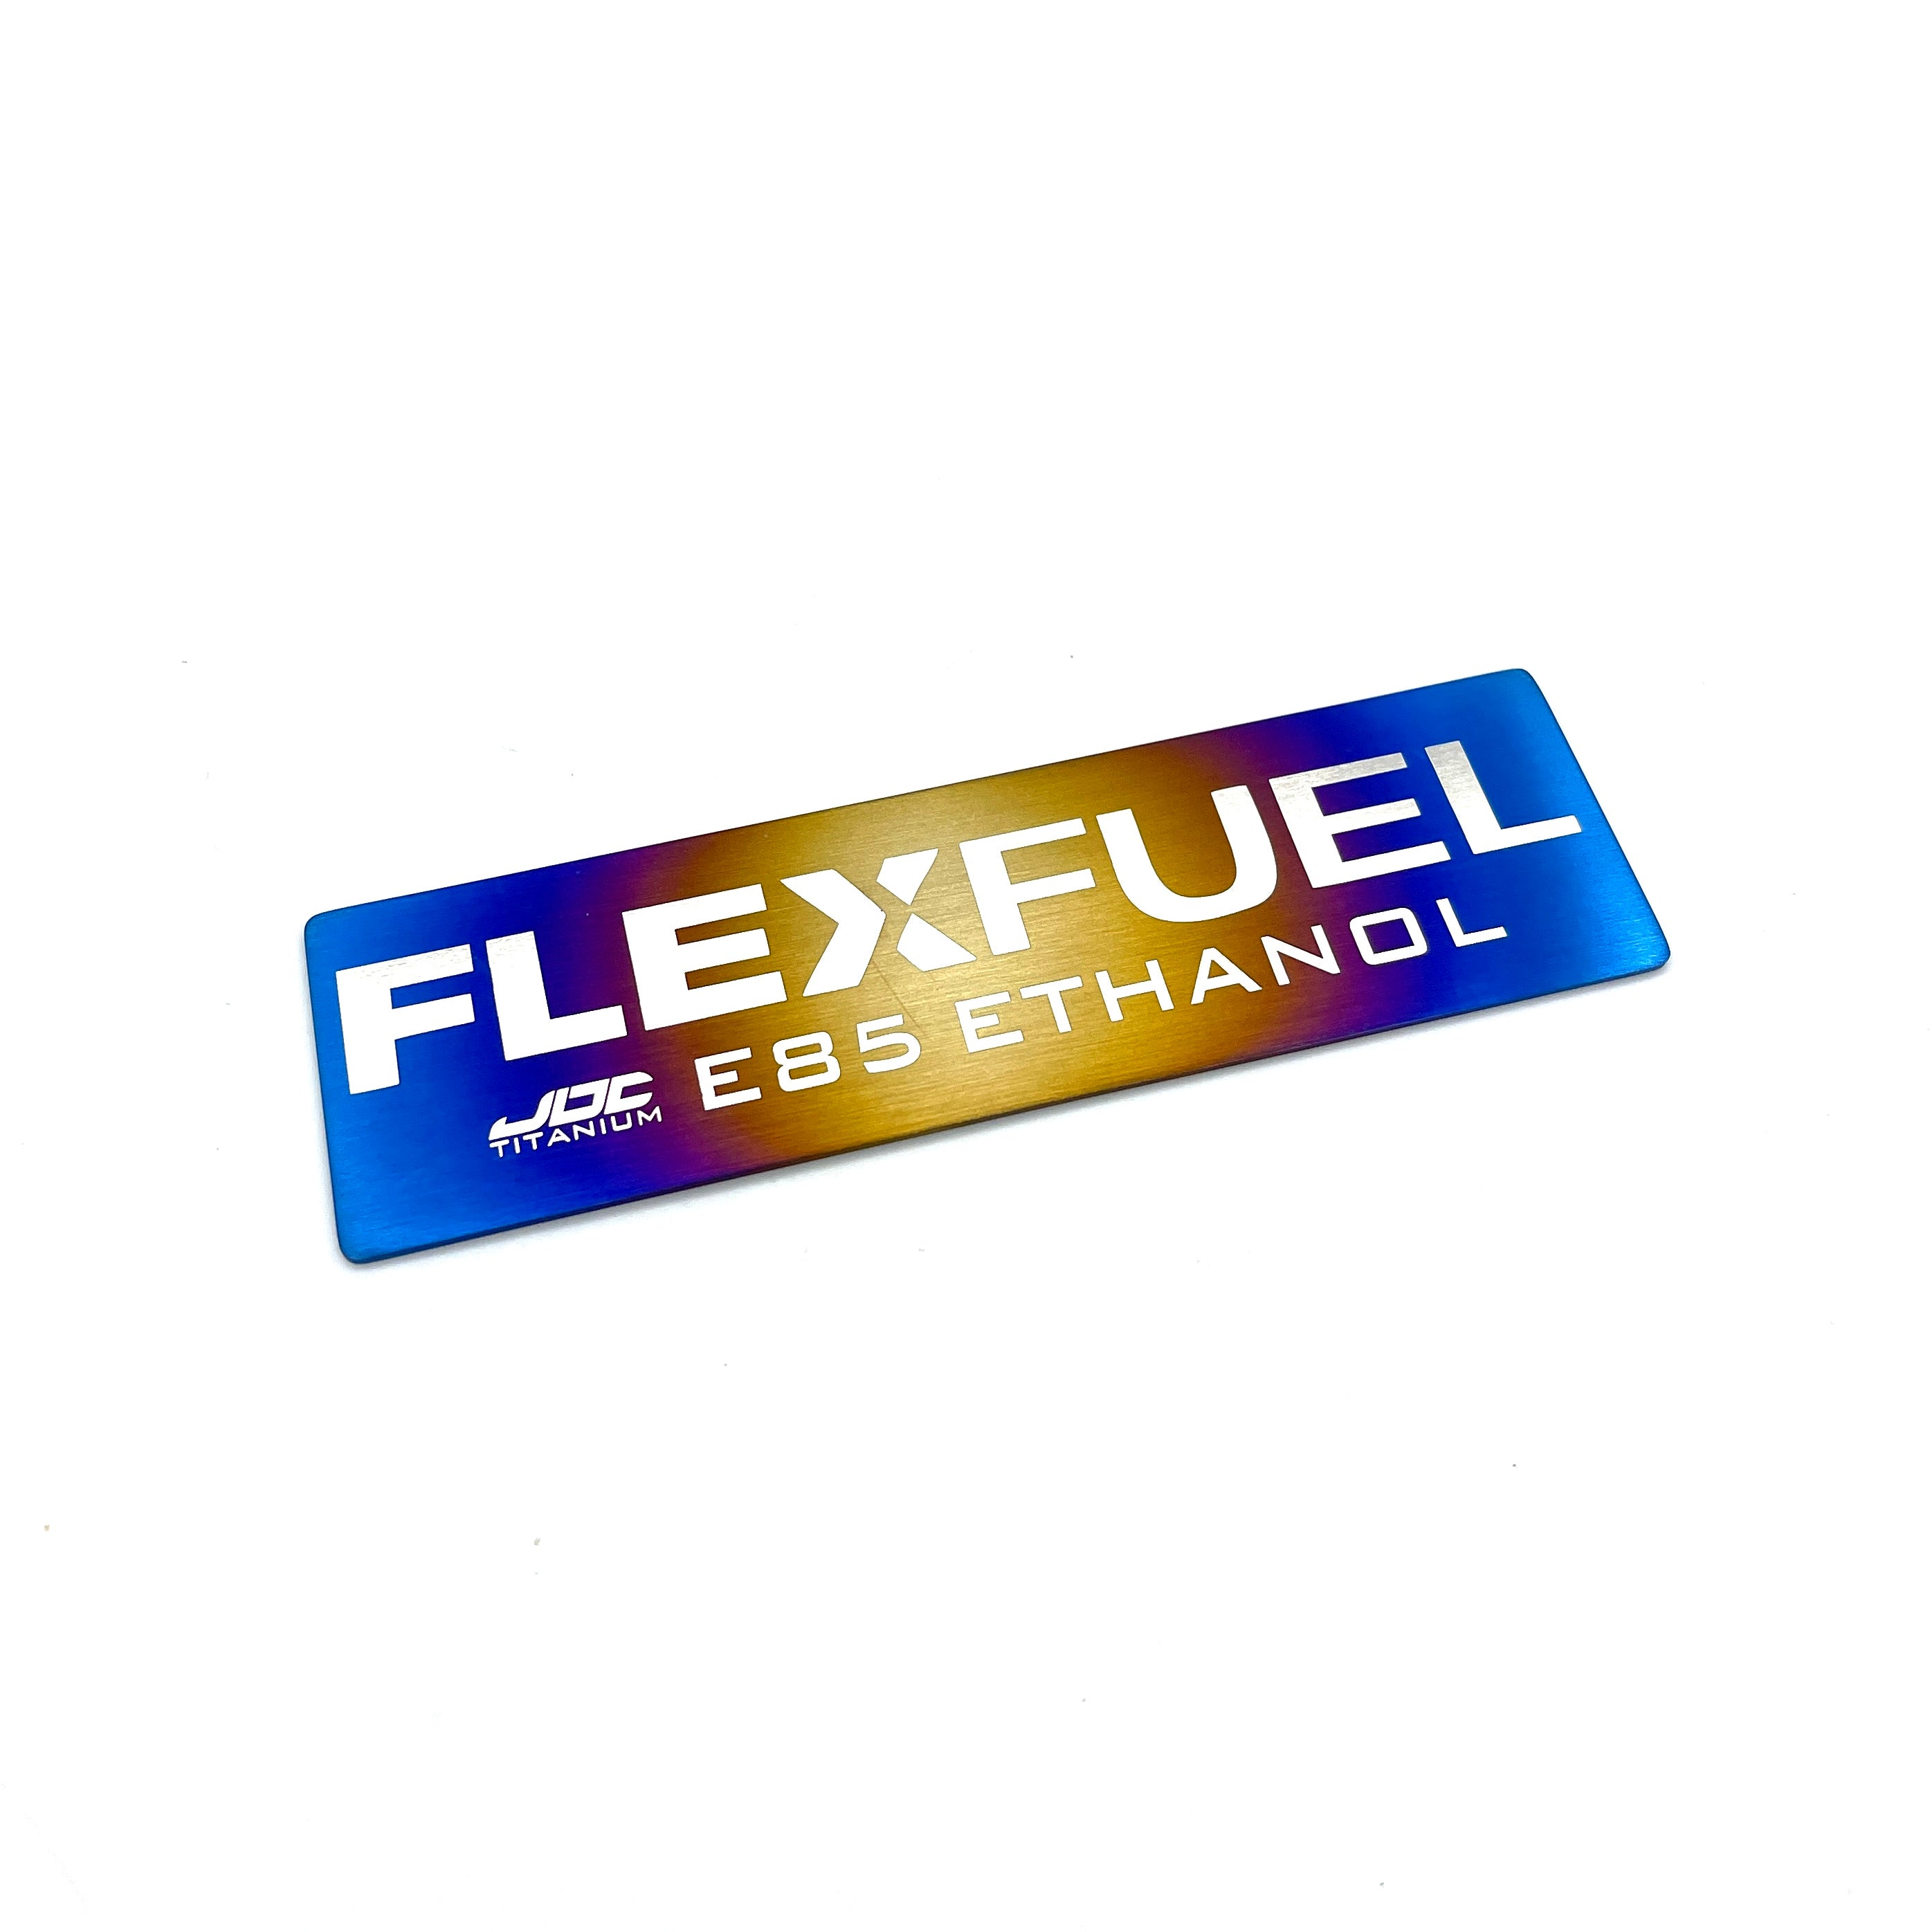 JDC Titanium E85 Ethanol/Flex Fuel Badge (Universal)